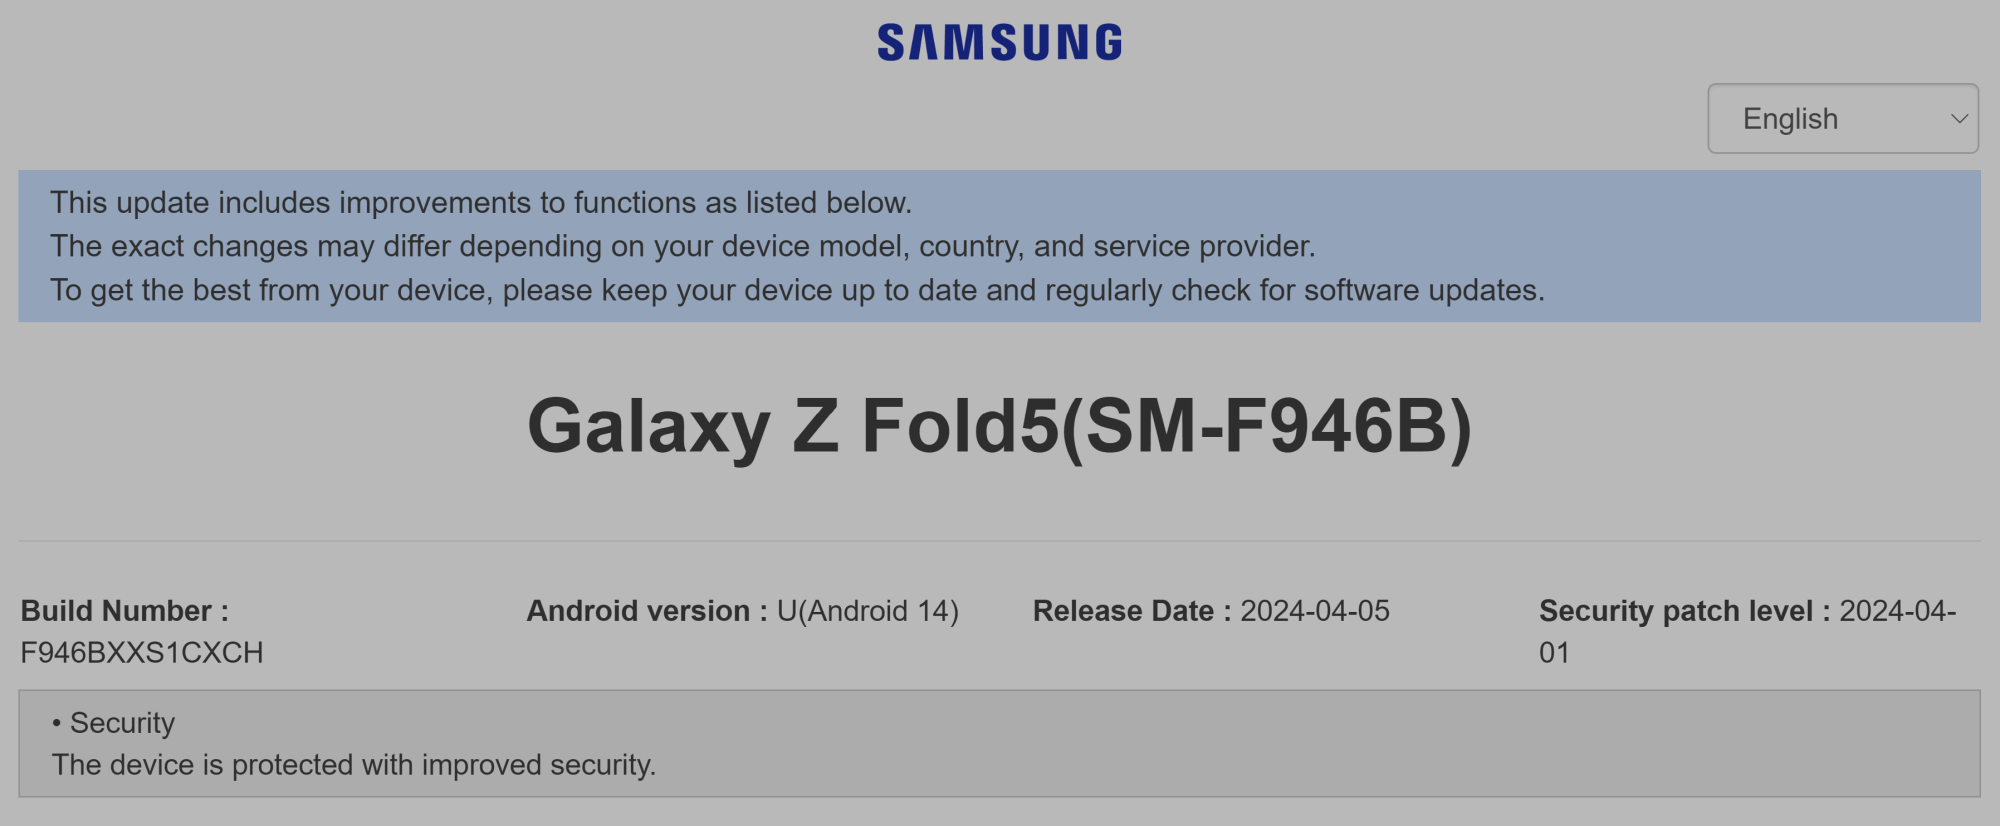 CXCH update Samsung changelist.png